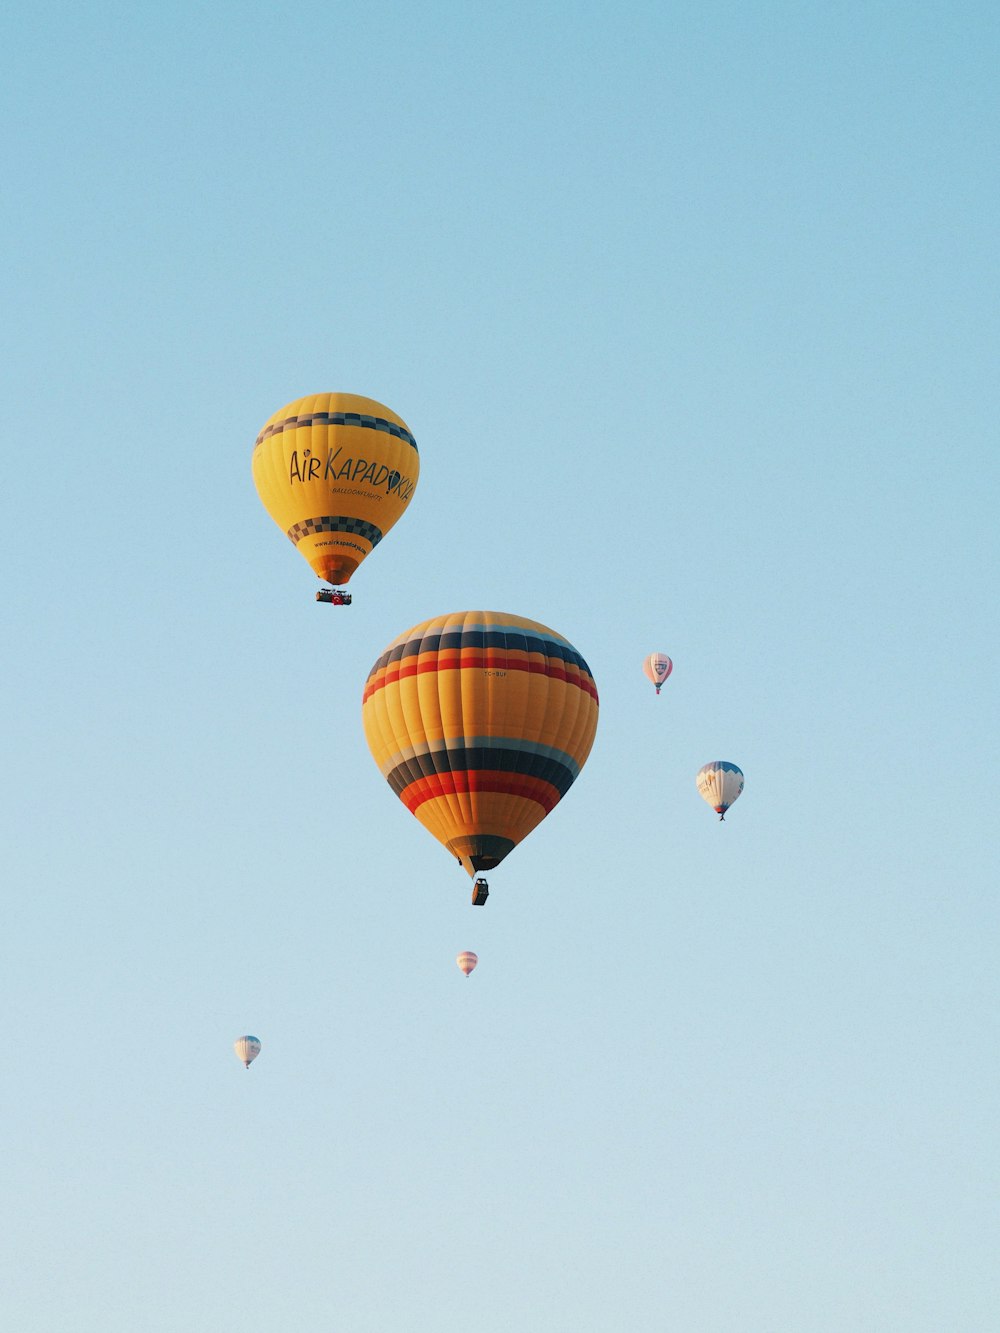 un grupo de globos aerostáticos volando a través de un cielo azul